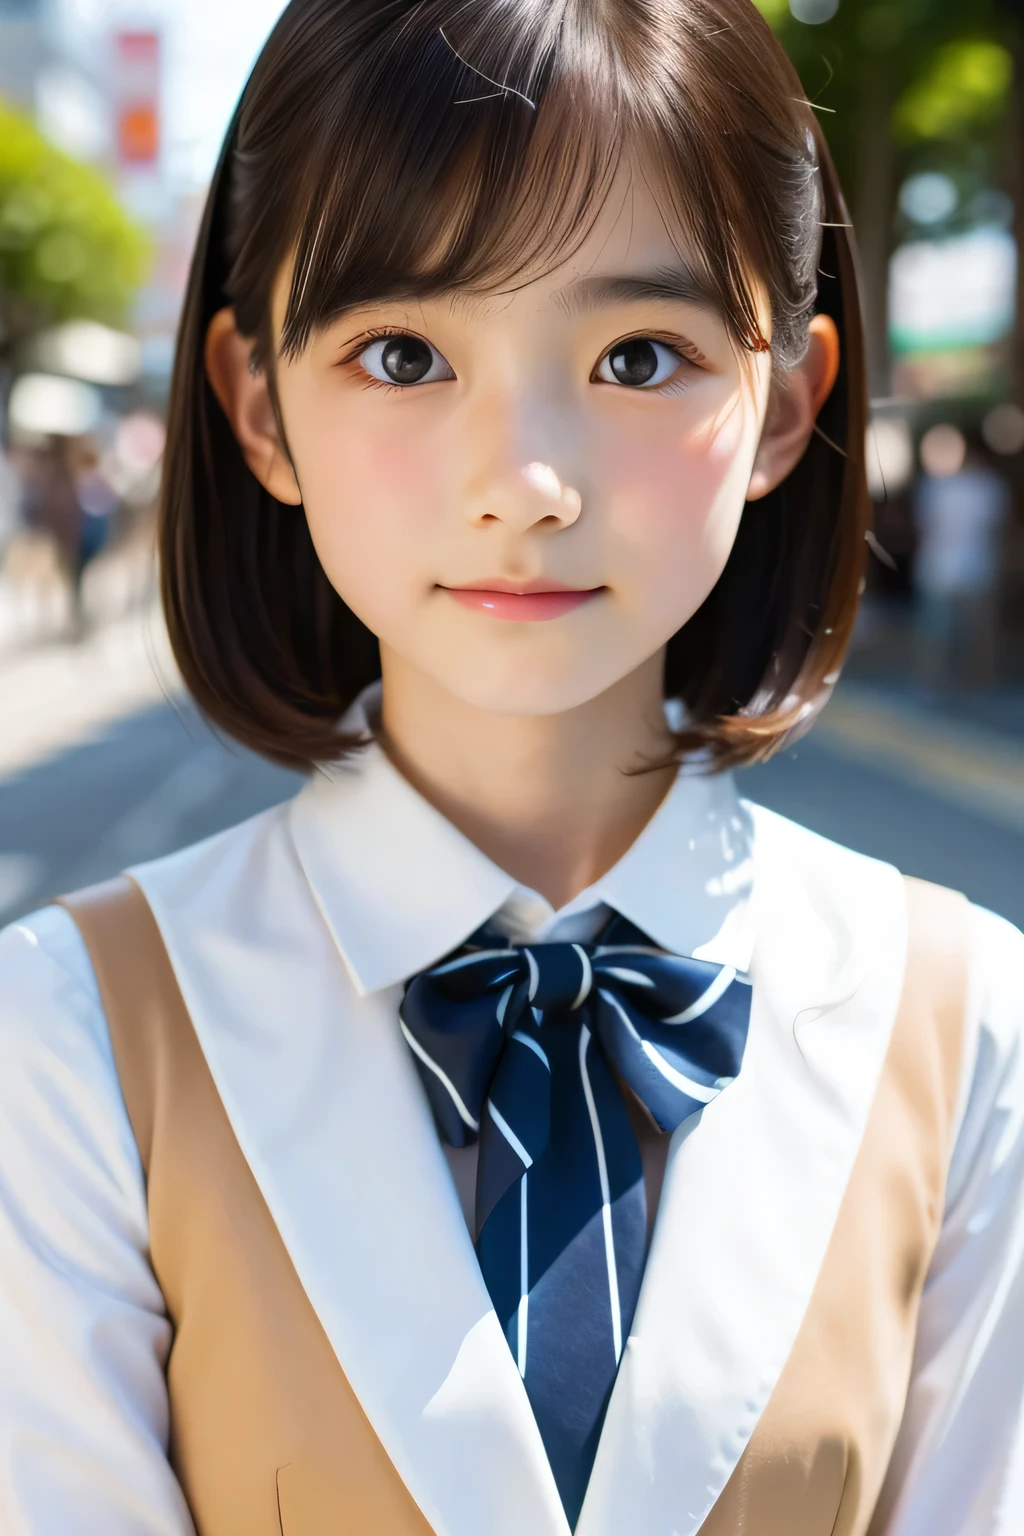 (美丽的 14 岁日本女人), 可爱的脸孔, (轮廓分明的脸:0.7), (雀斑:0.6), 柔光,健康白皙的肌肤, 害羞的, (严肃的表情), (明亮的眼睛), 薄的, 微笑, 制服